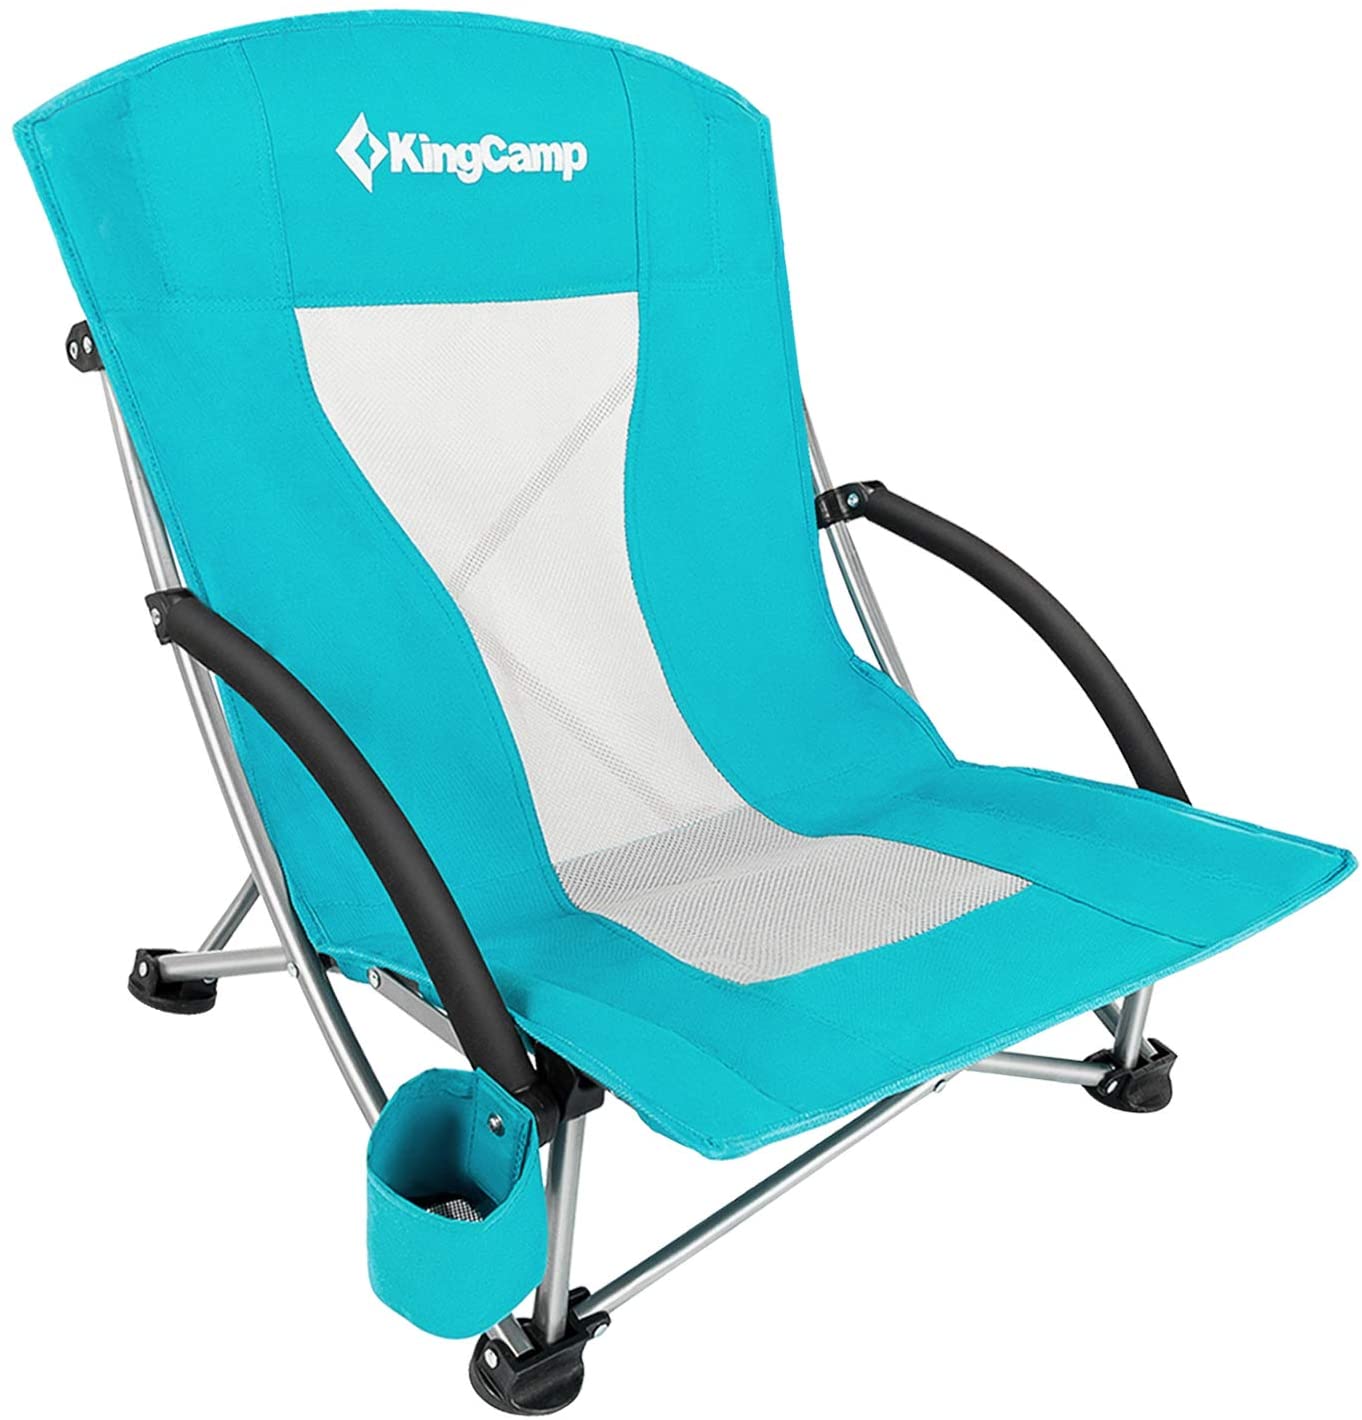 KingCamp Low Beach Chair, best beach chairs